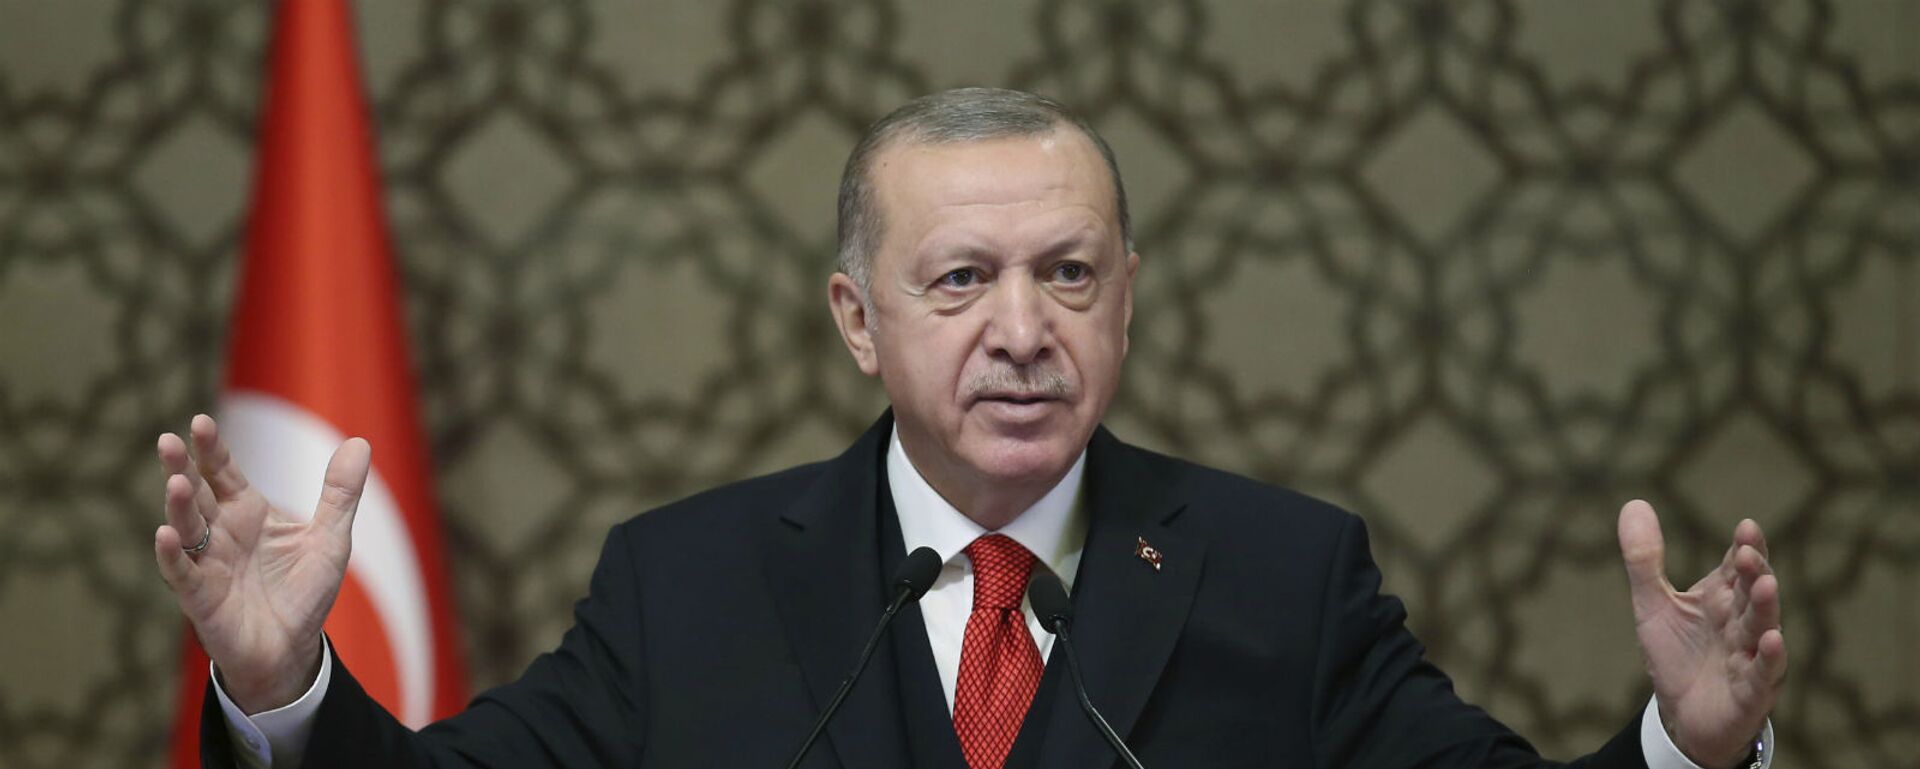 Президент Турции Реджеп Тайип Эрдоган выступает на встрече послов Турции (9 ноября 2020). Анкара - Sputnik Արմենիա, 1920, 29.04.2021